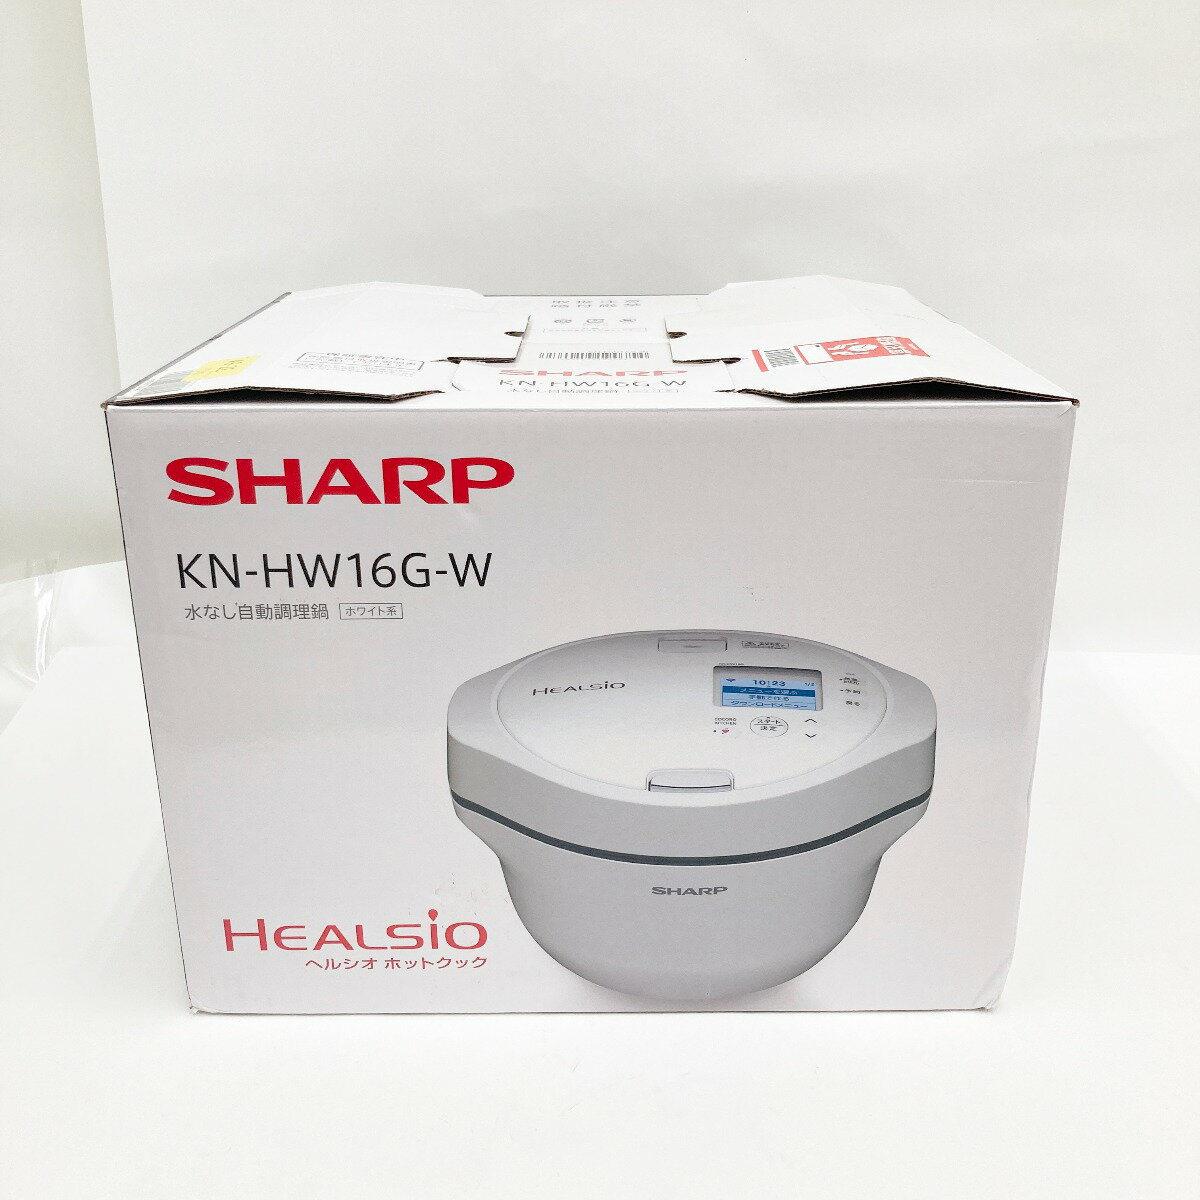 〇〇【中古】SHARP シャープ ヘルシオ ホットクック 電気調理鍋 無水鍋 KN-HW16G-W ホワイト Sランク